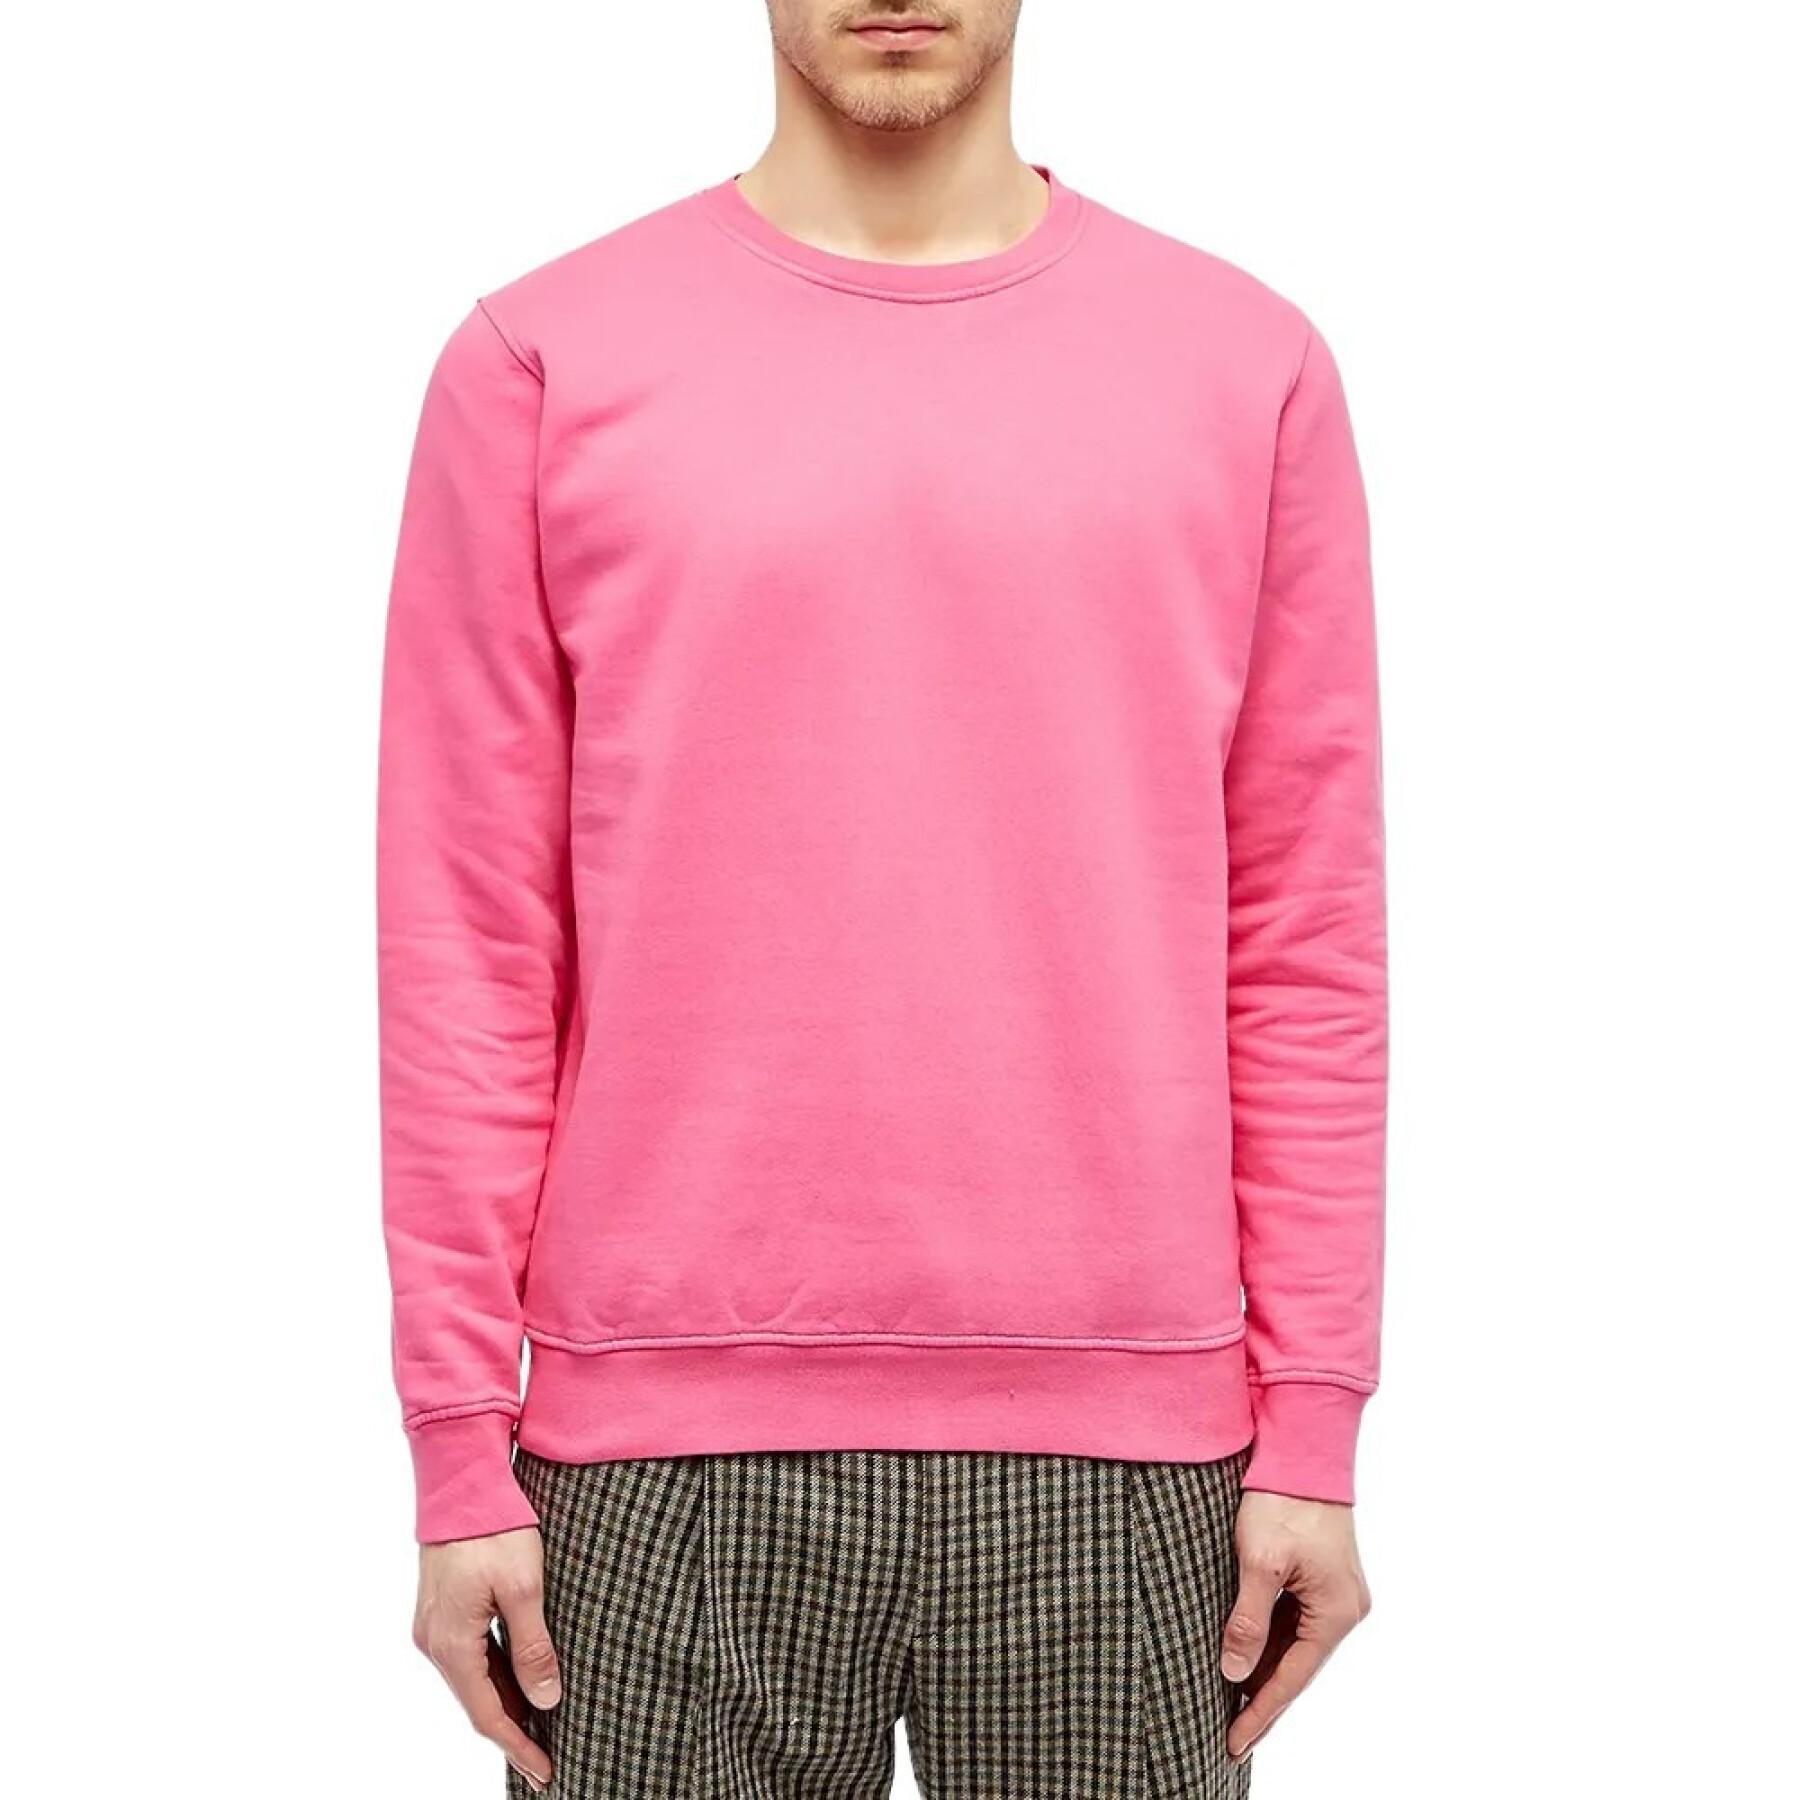 Sweatshirt mit Rundhalsausschnitt Colorful Standard Classic Organic bubblegum pink